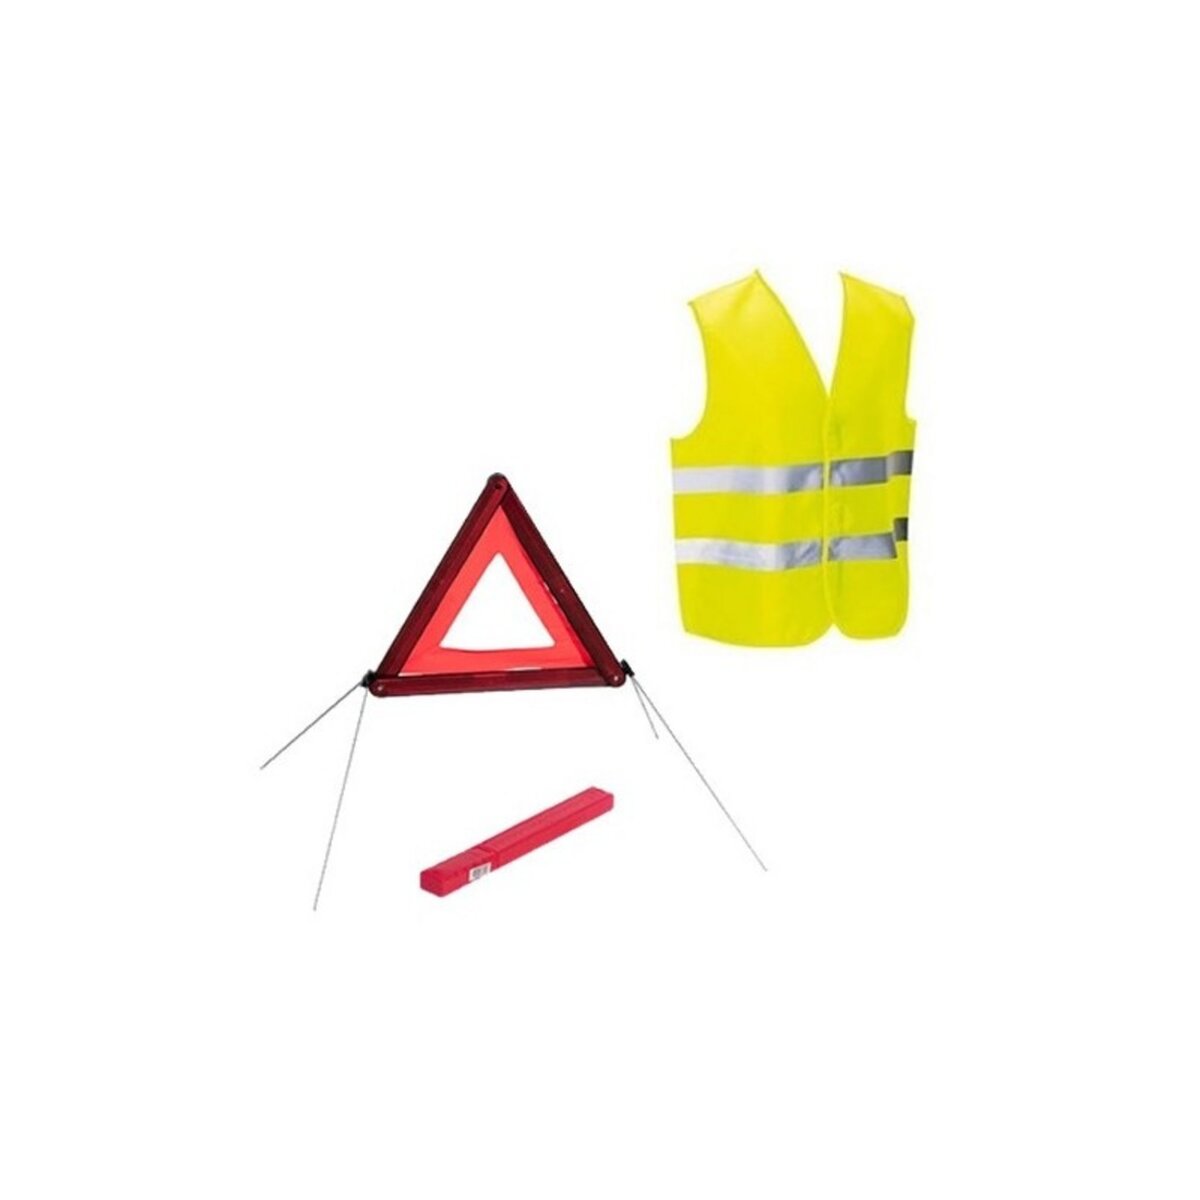 LIFEBOX Kit sécurité voiture homologué gilet et triangle de signalisation  pas cher 